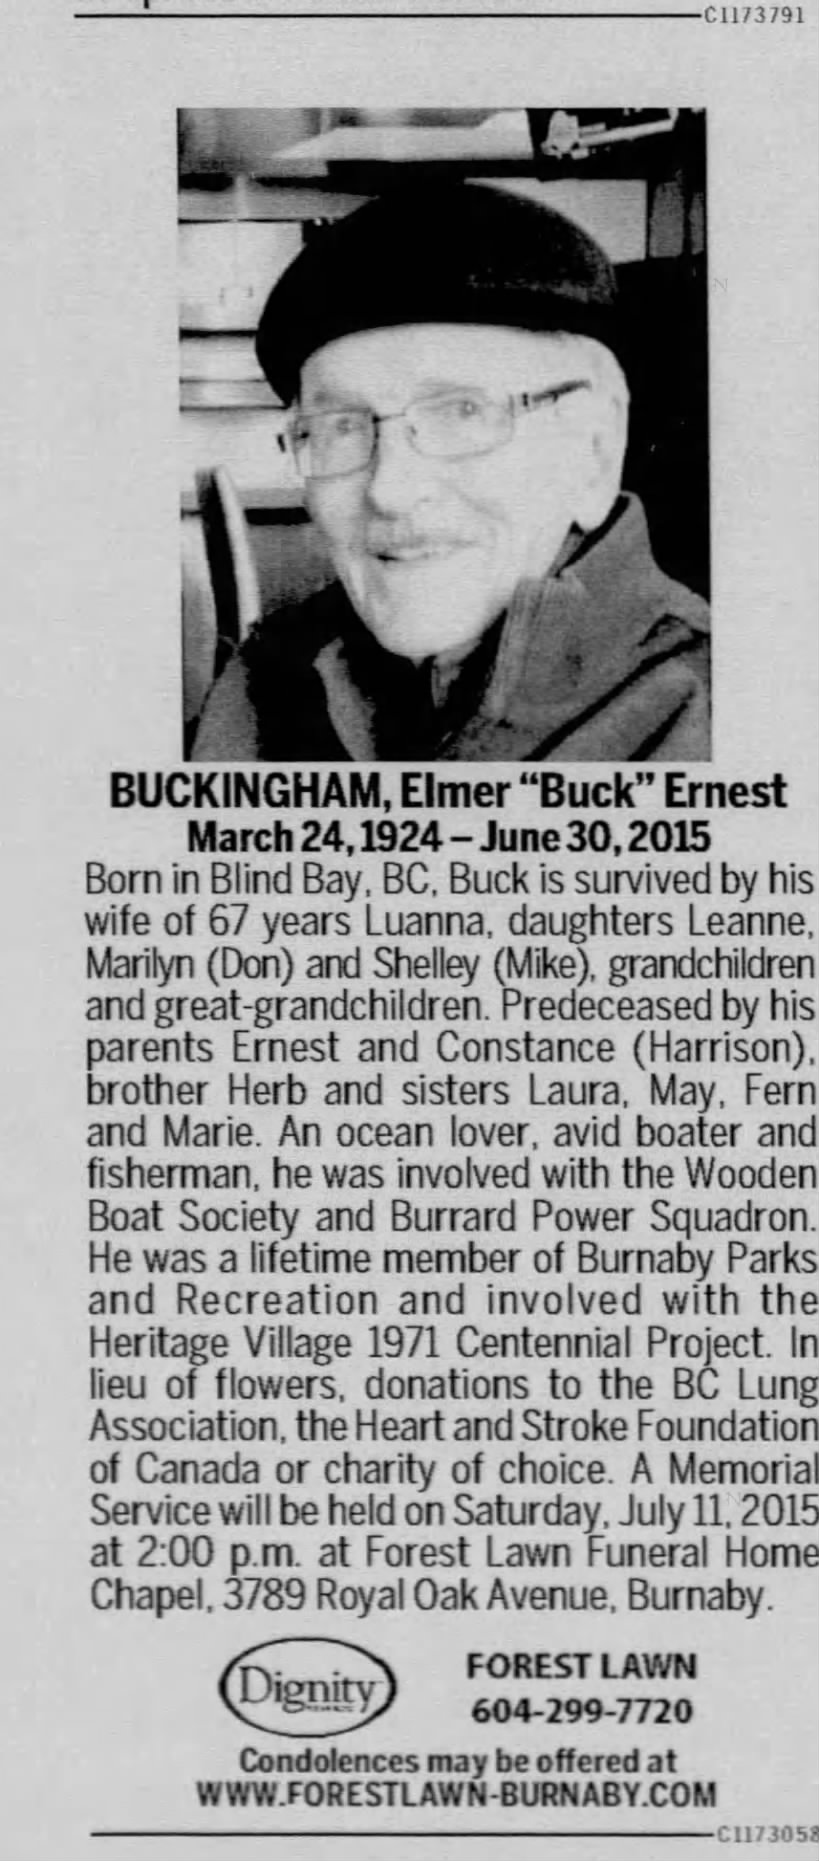 Obituary for Elmer BUCKINGHAM Ernest, 1924-2015